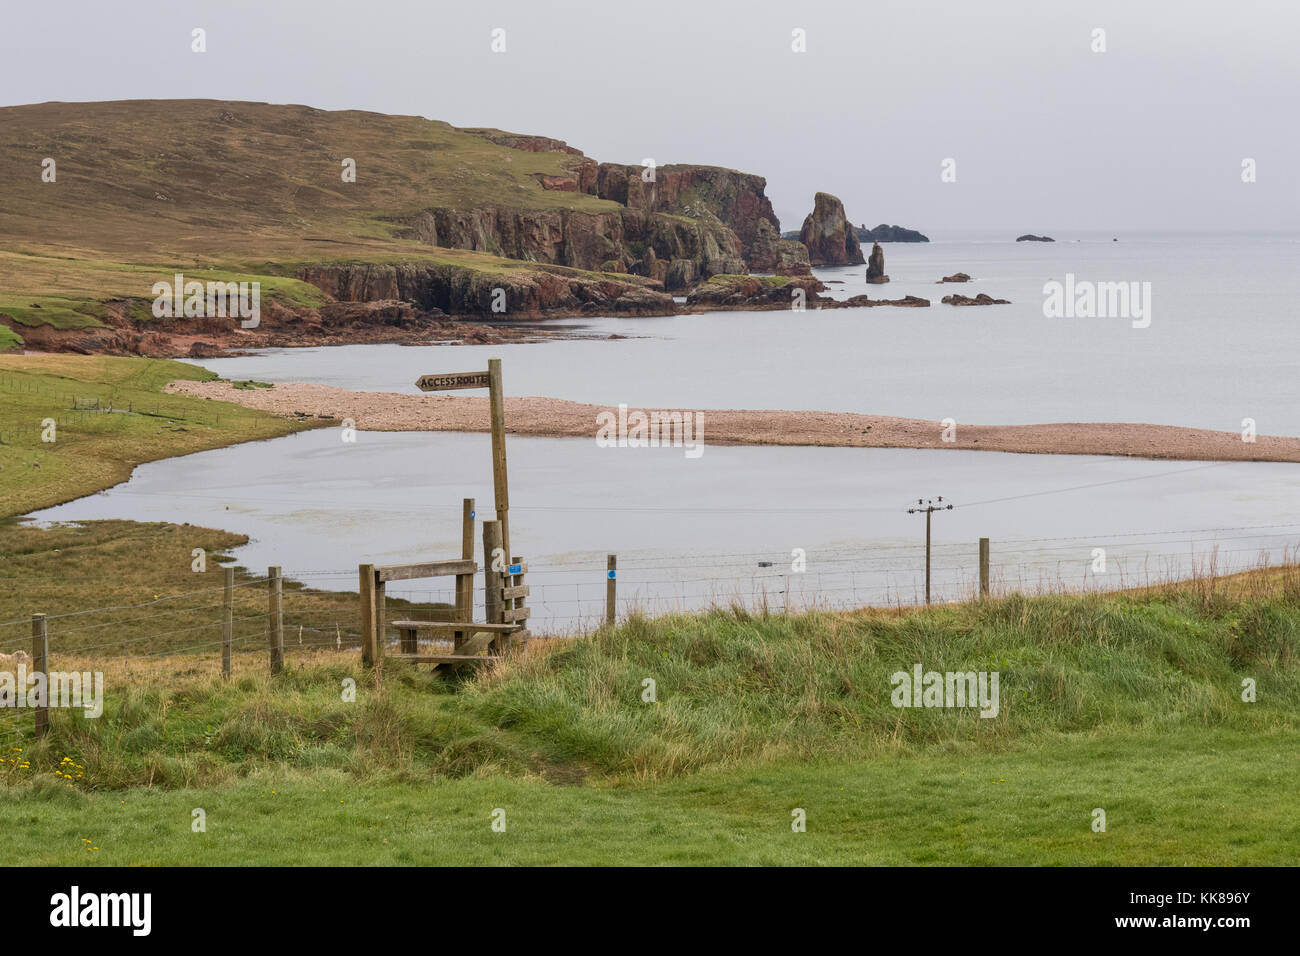 Panneau indiquant le sentier menant à la baie de Braewick à côté du camping Braewick Cafe, Eshaness, Shetland Islands, Écosse, Royaume-Uni Banque D'Images